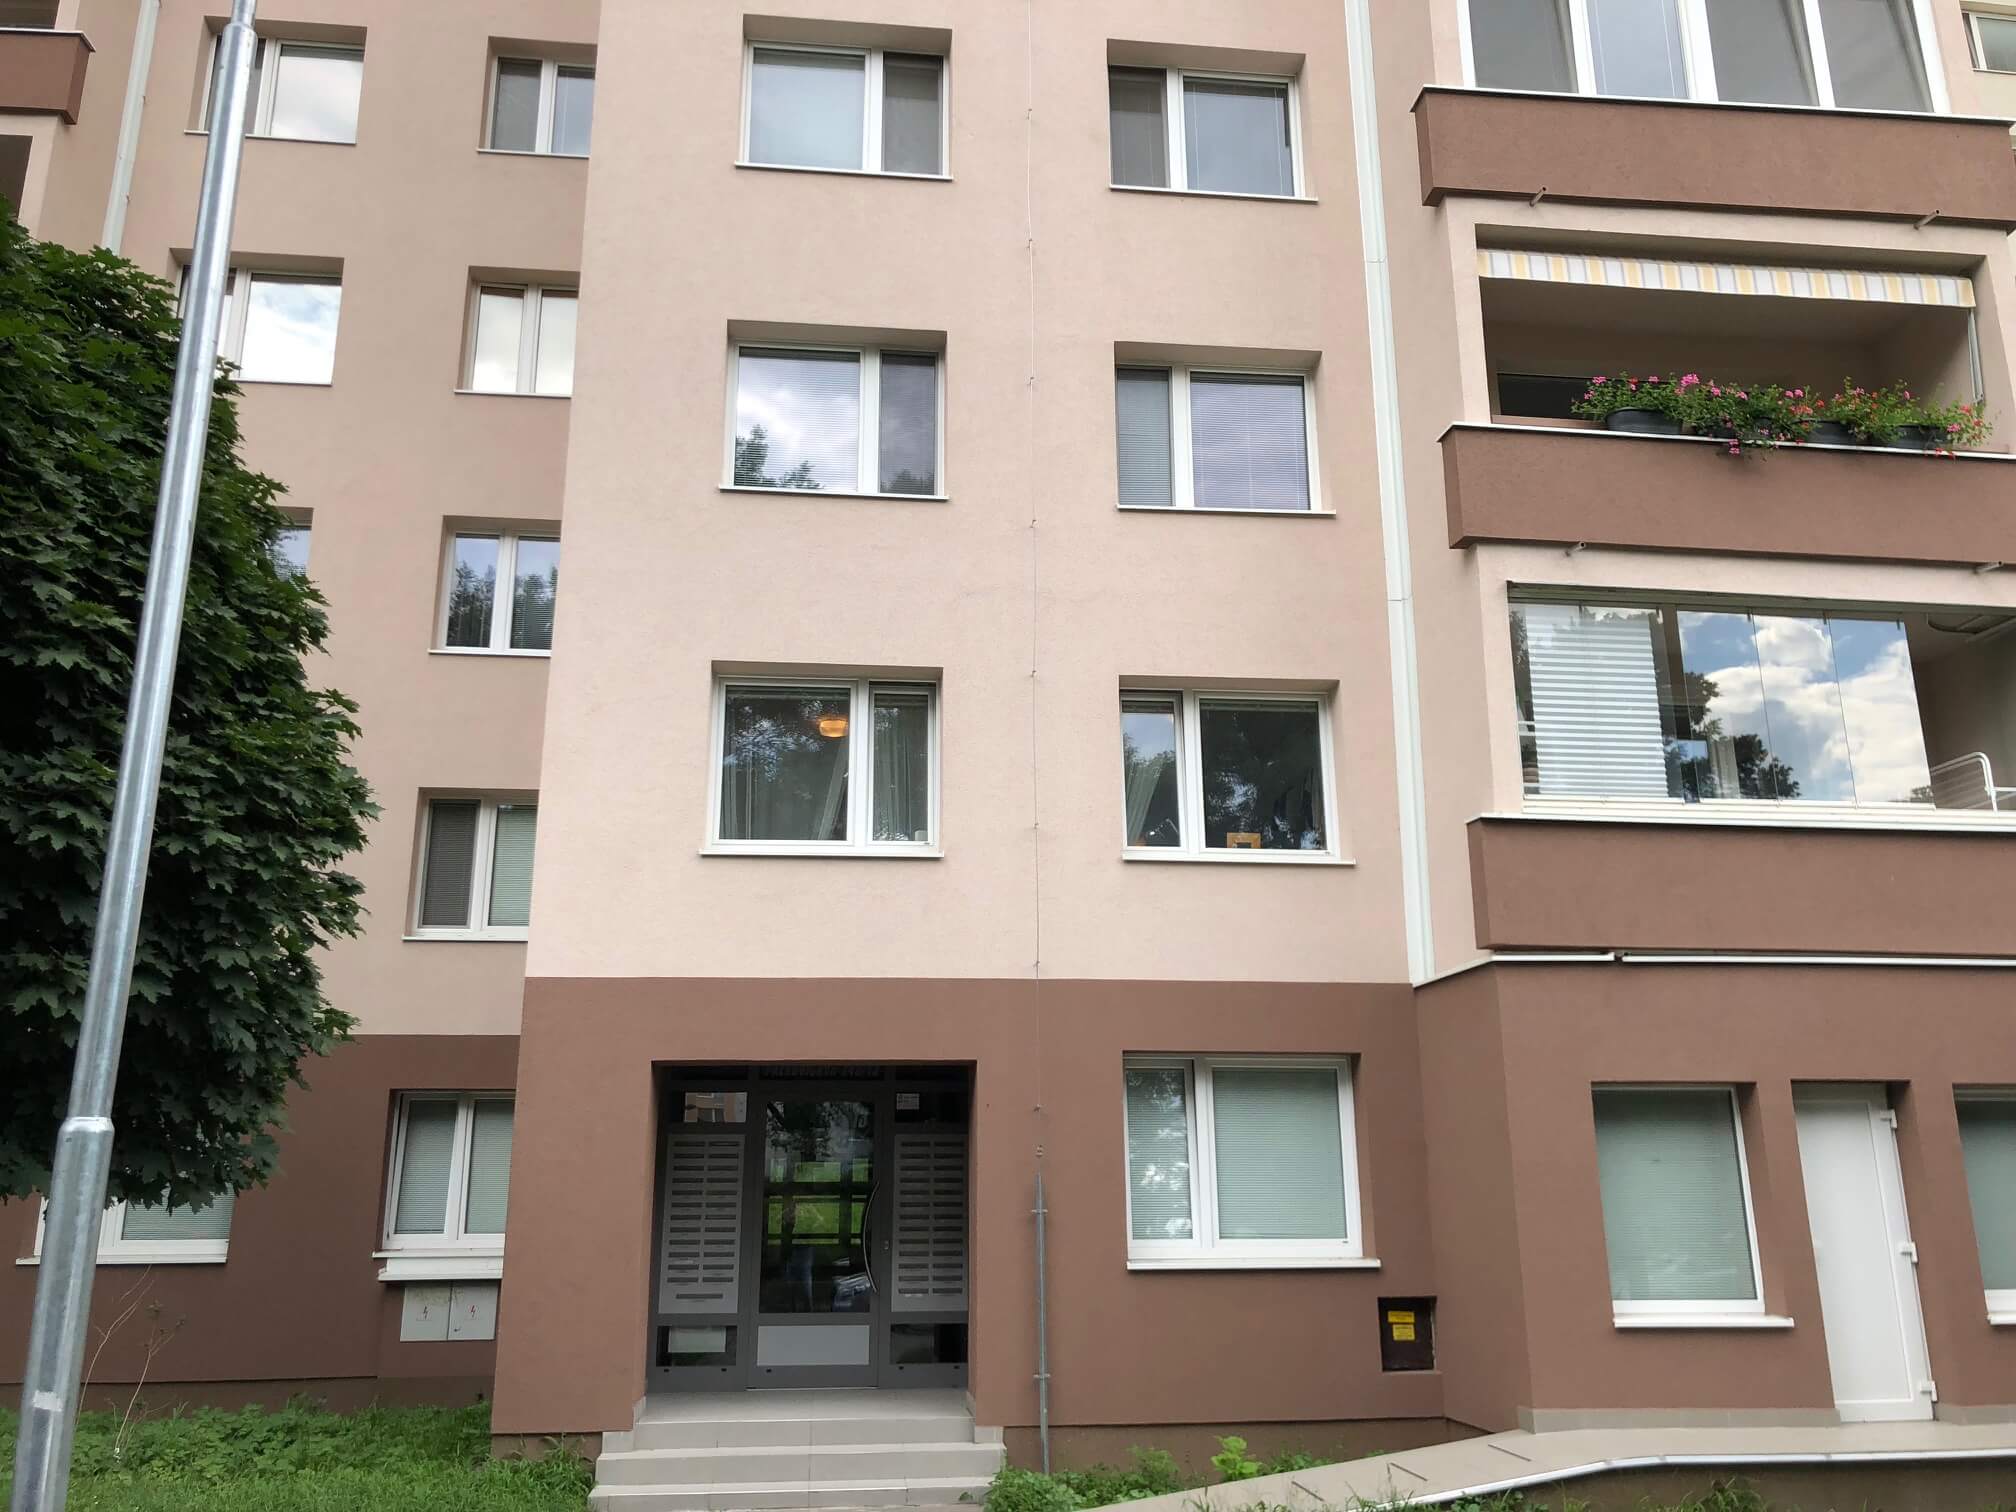 Predané Predaj exkluzívneho 3 izb. bytu,v Ružinove, ulica Palkovičová, blízko Trhoviska Miletičky v Bratislave, 68m2, kompletne zariadený-7